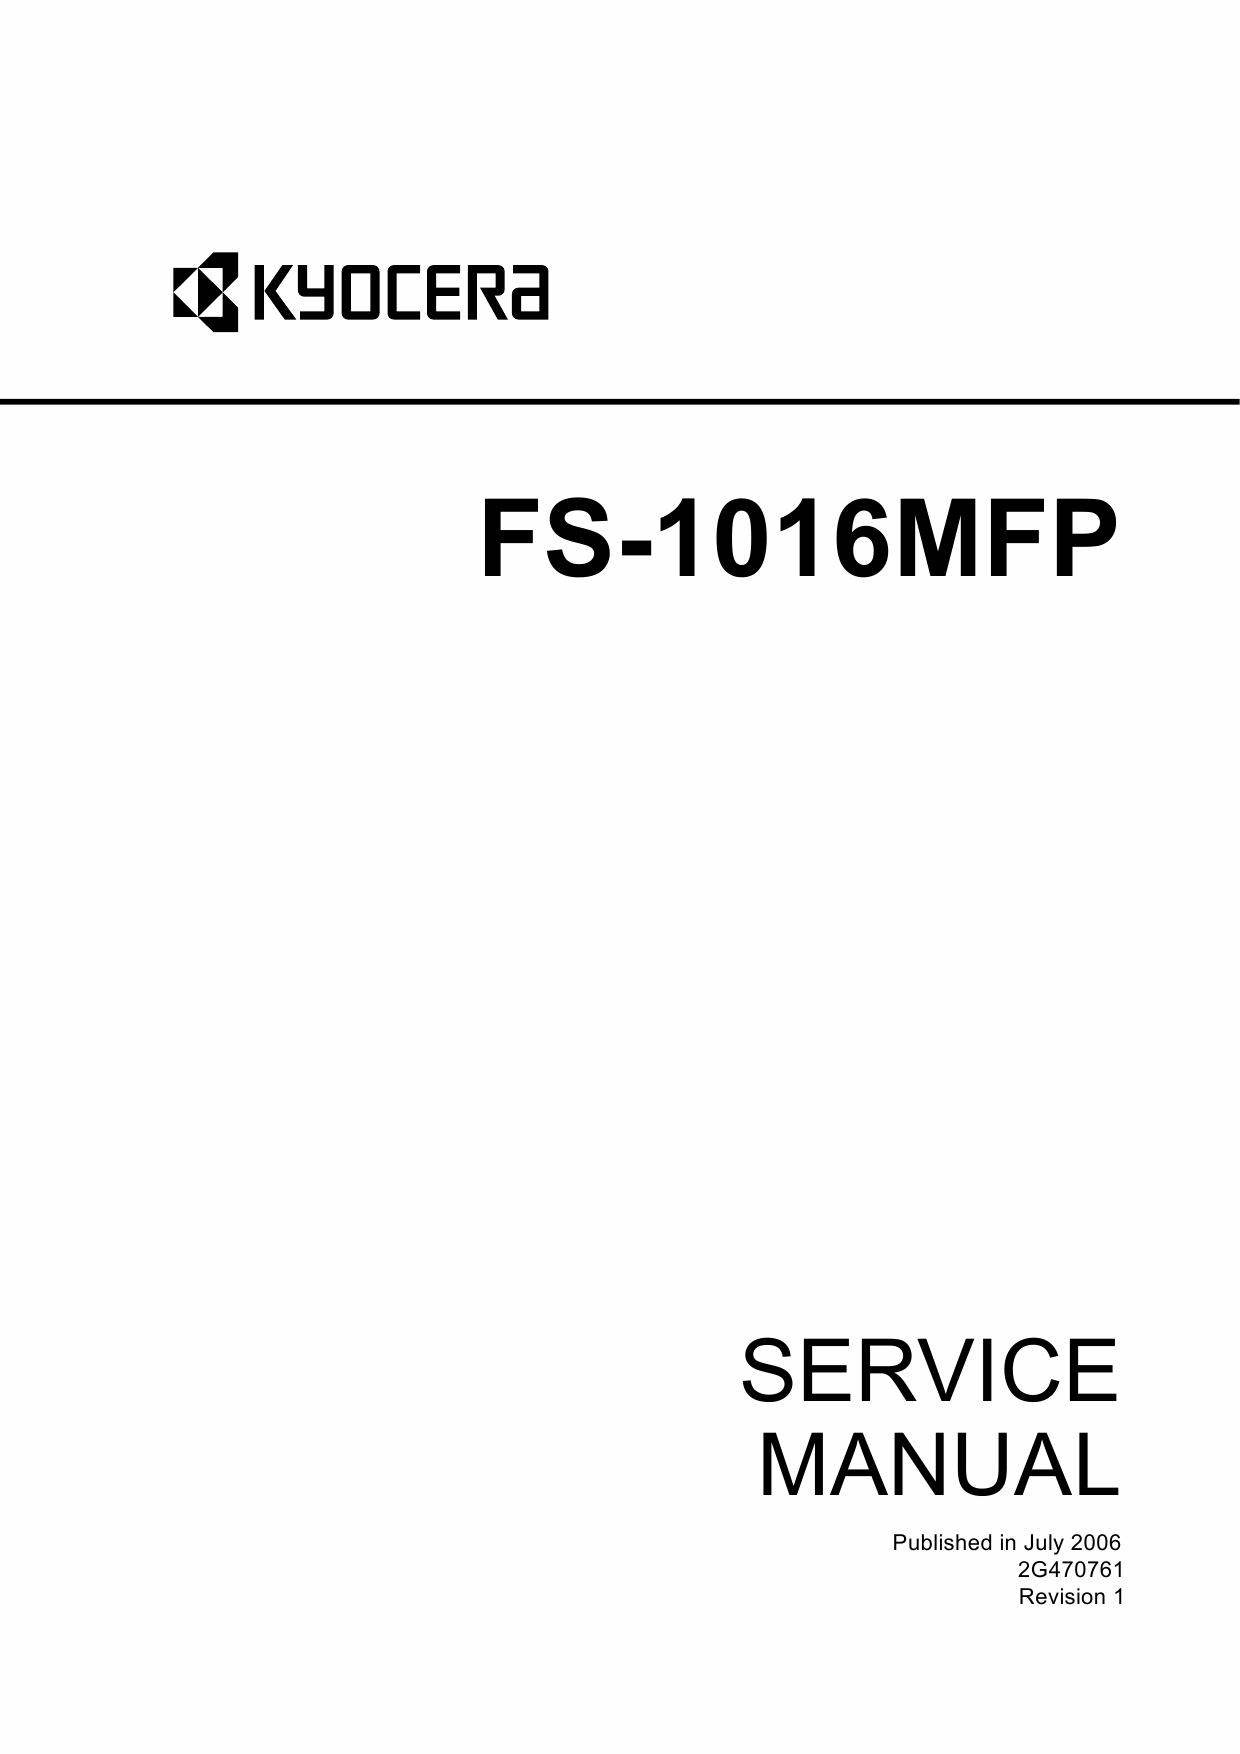 KYOCERA MFP FS-1016MFP Parts and Service Manual-1